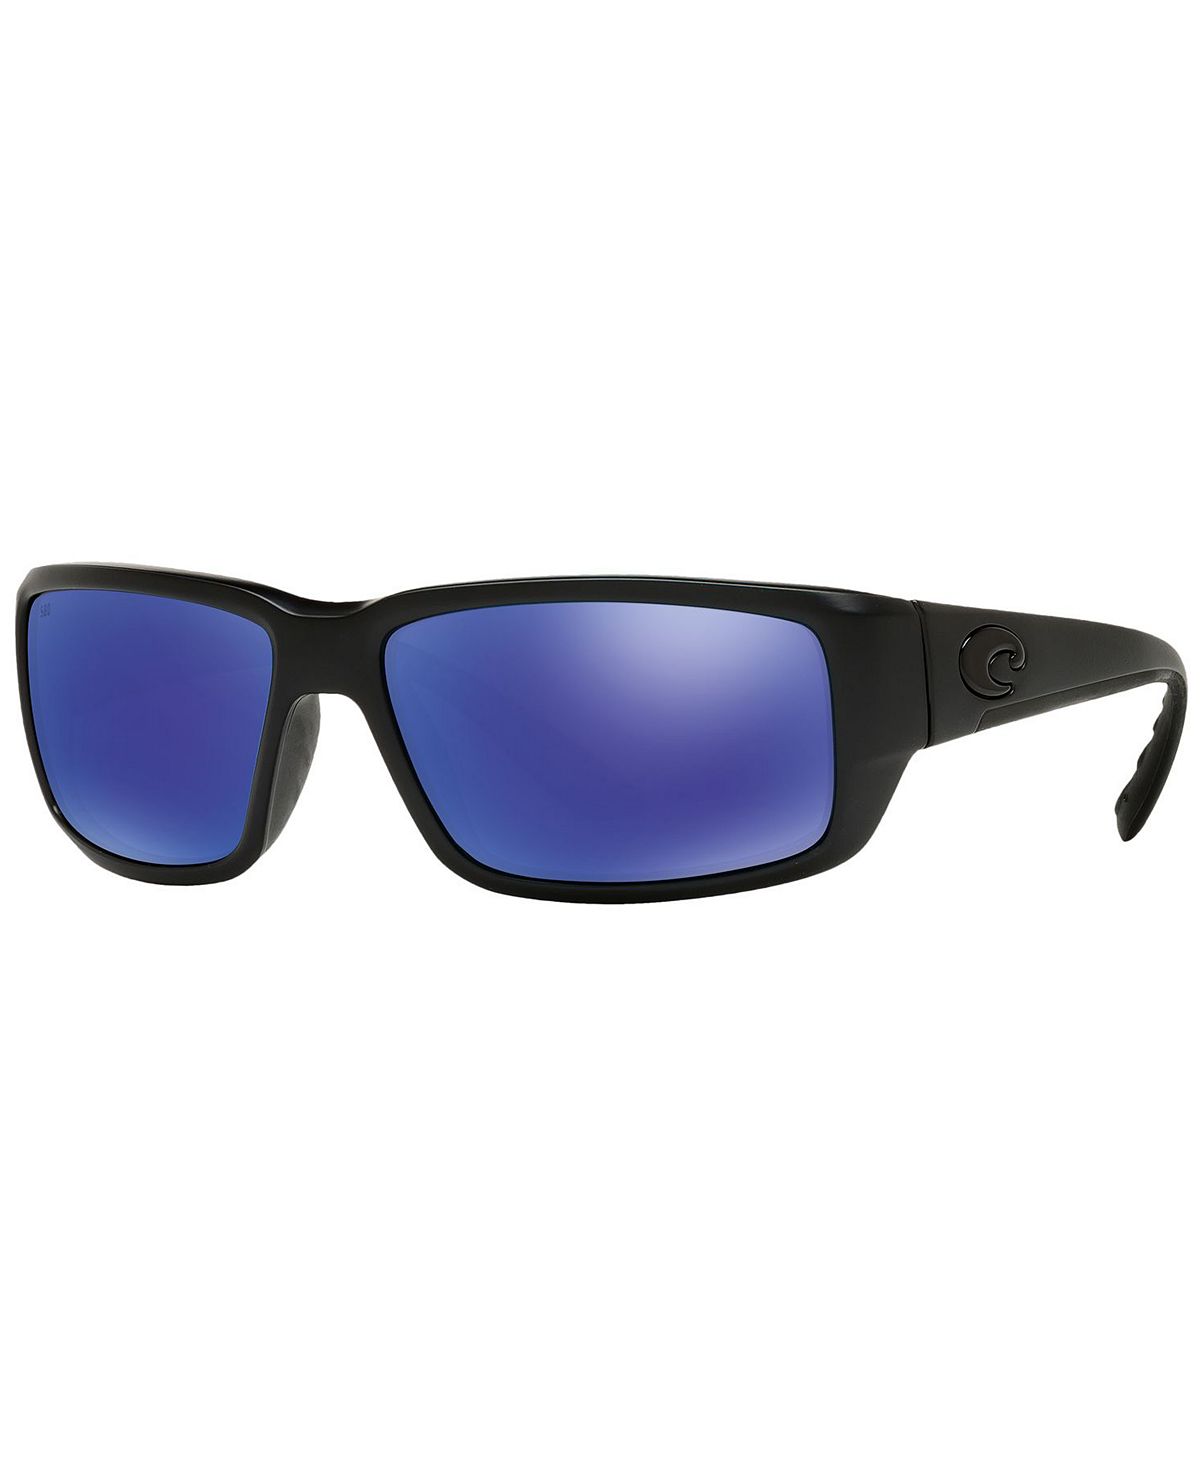 Мужские поляризованные солнцезащитные очки, FANTAIL Costa Del Mar